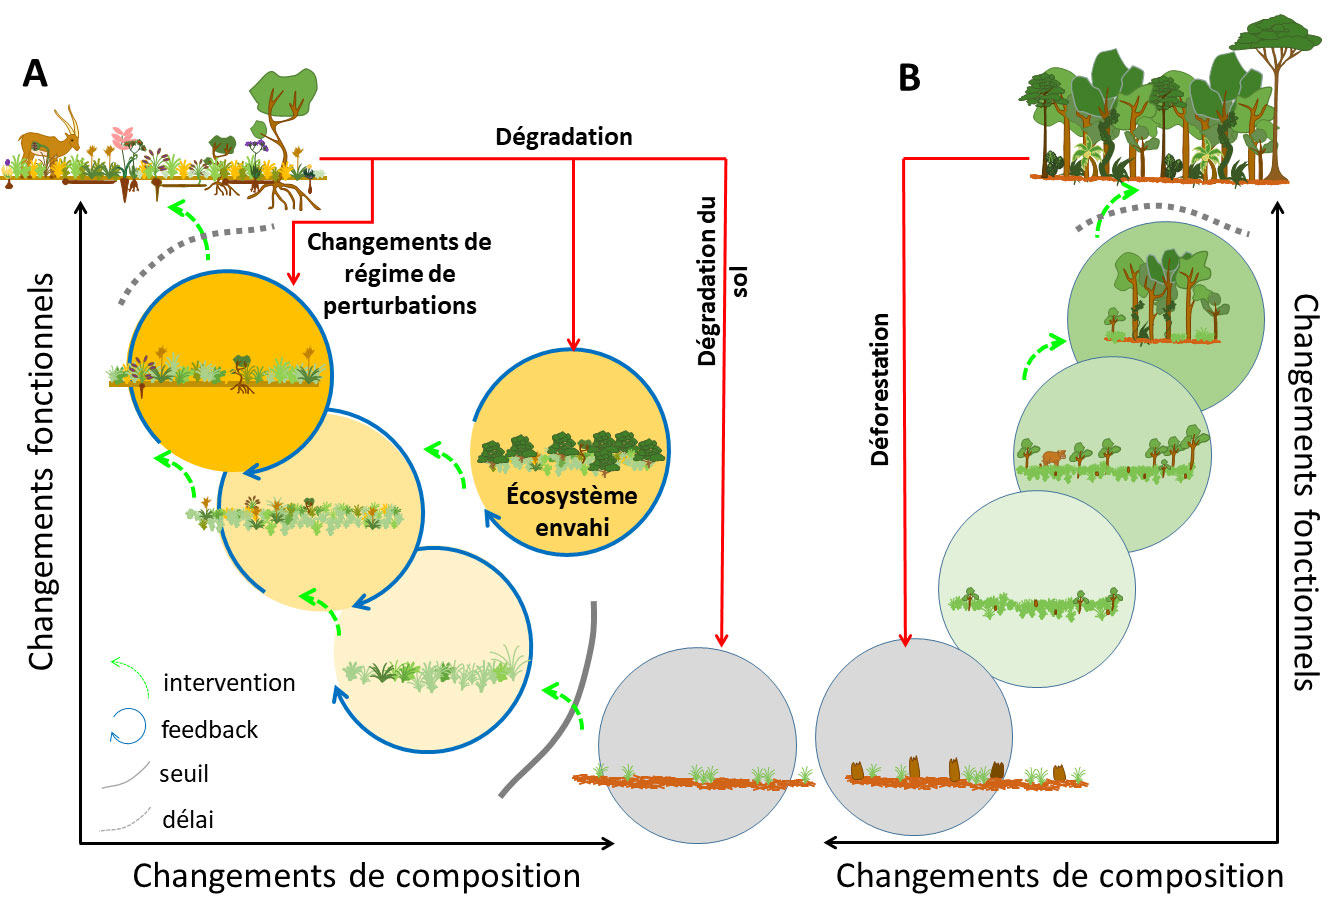 Différents types de dégradation peuvent mener à différents niveaux de perte de fonctions ou de diversité pour les écosystèmes herbacés anciens. La résilience ou la restauration sont dépendantes du degré de changements fonctionnels ou de composition.